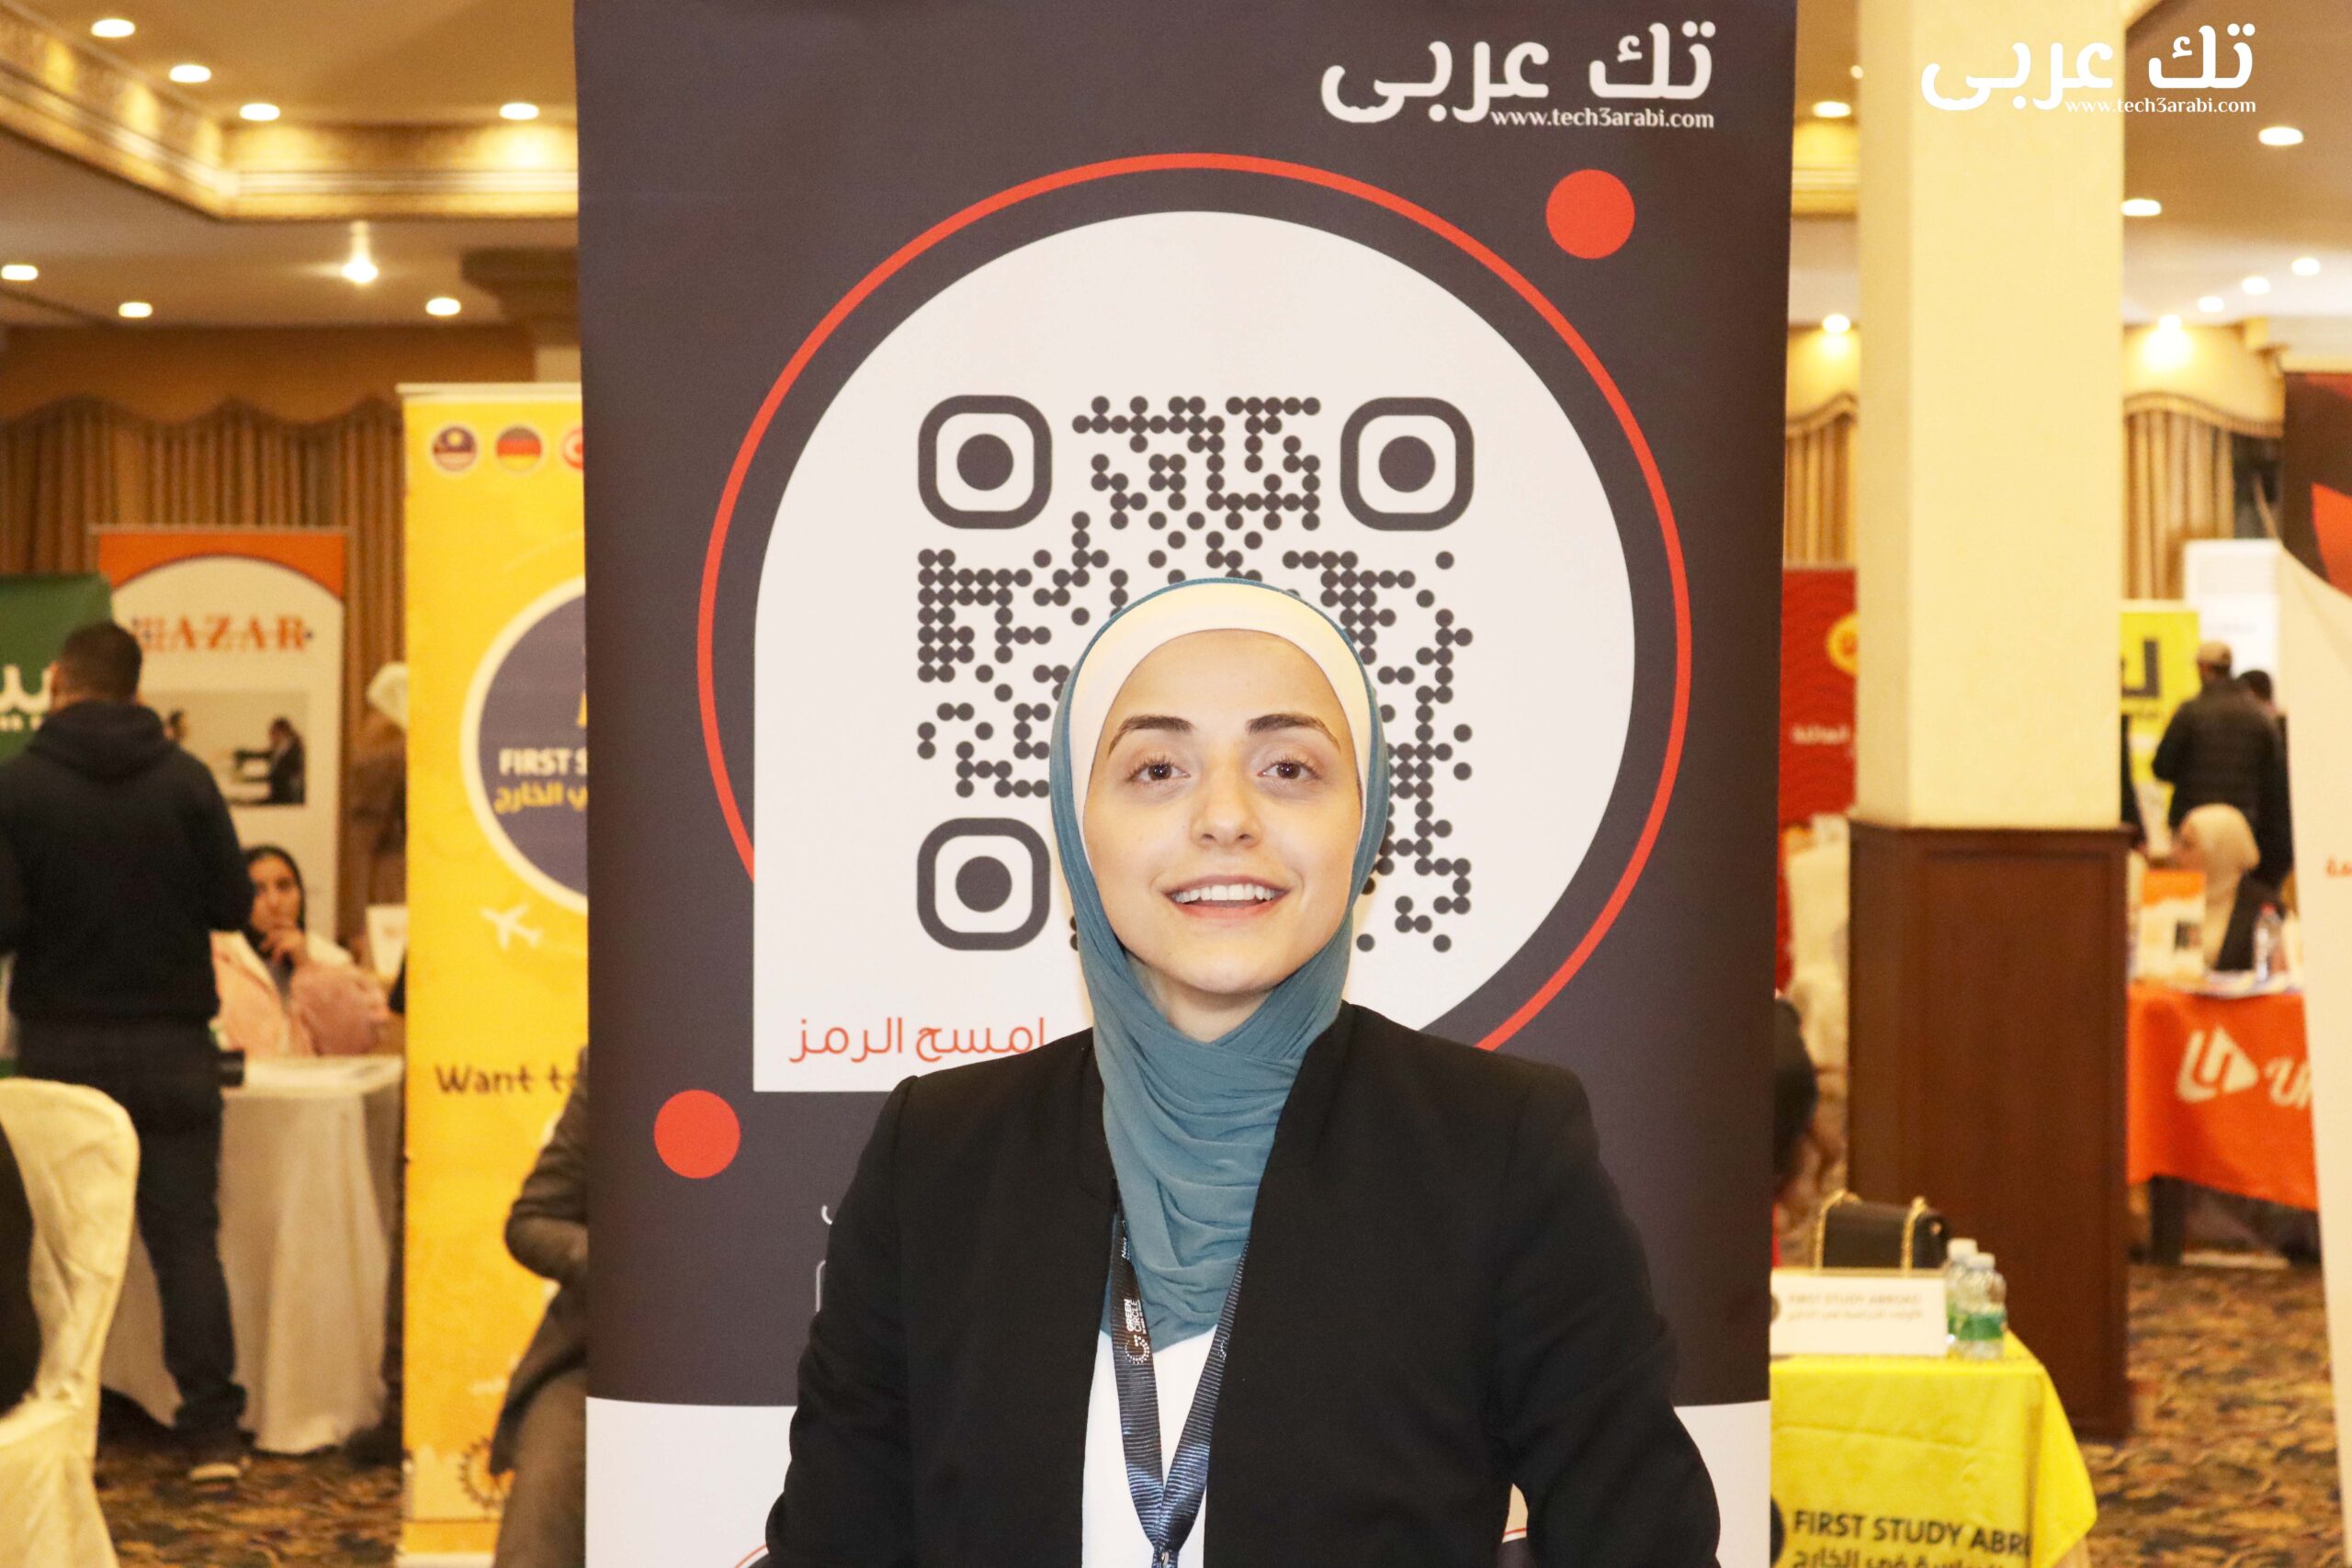 مقابلة فريق تك عربي مع السيدة فرح عطا الله Talent Acquisition Sourcing Specialist في March McLennan